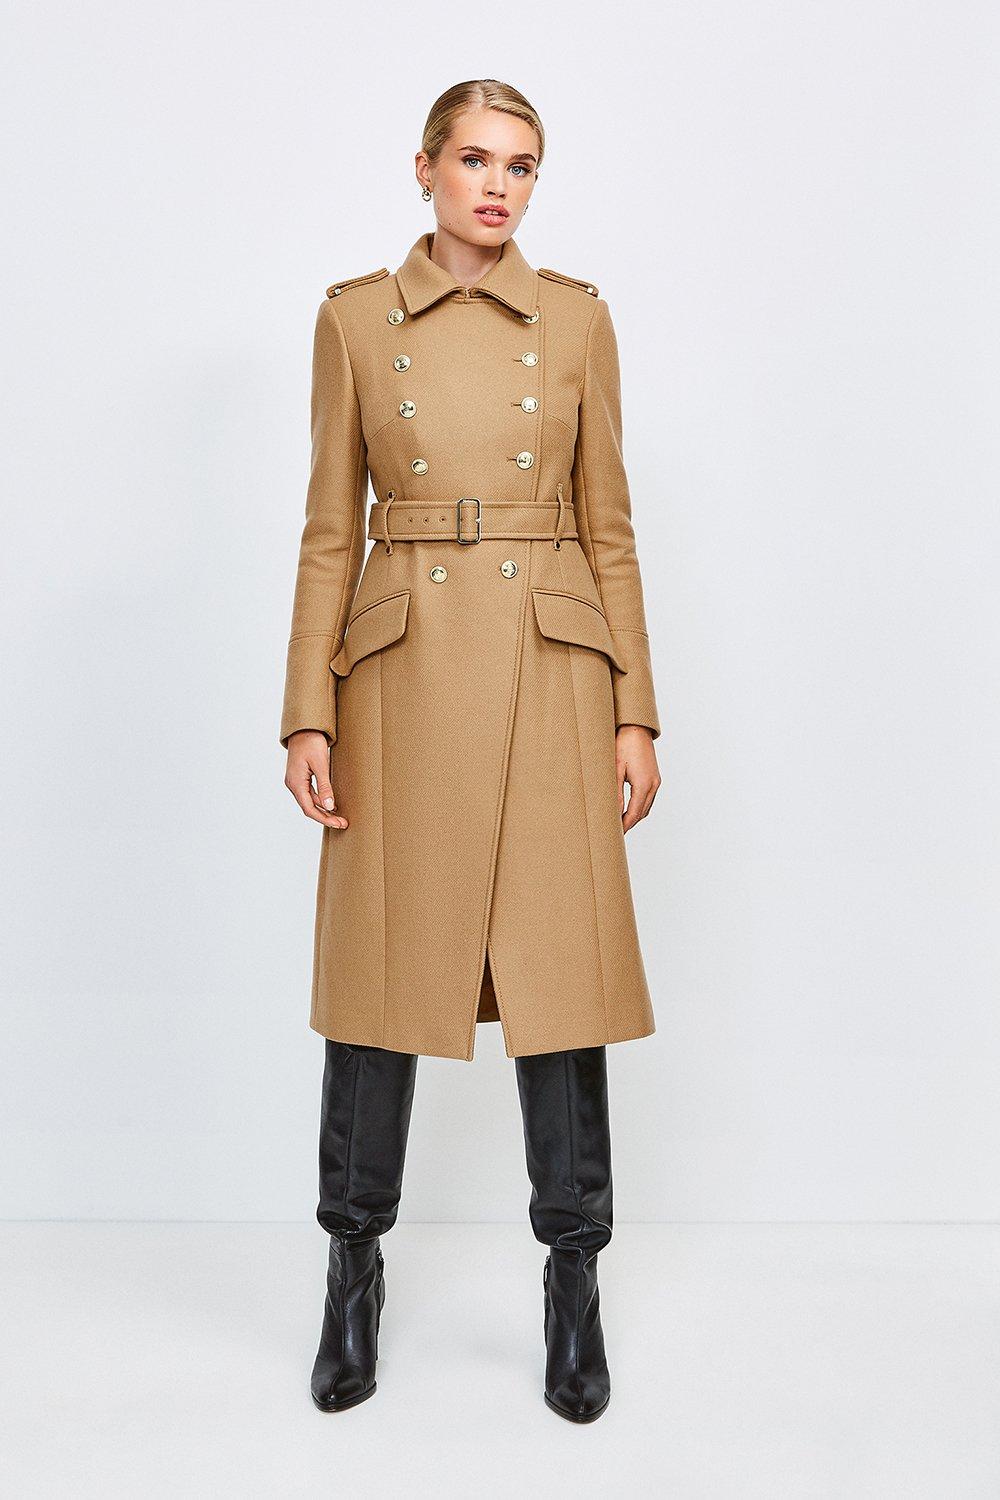 Karen Millen Wool Blend Coat on Sale, 56% OFF | espirituviajero.com